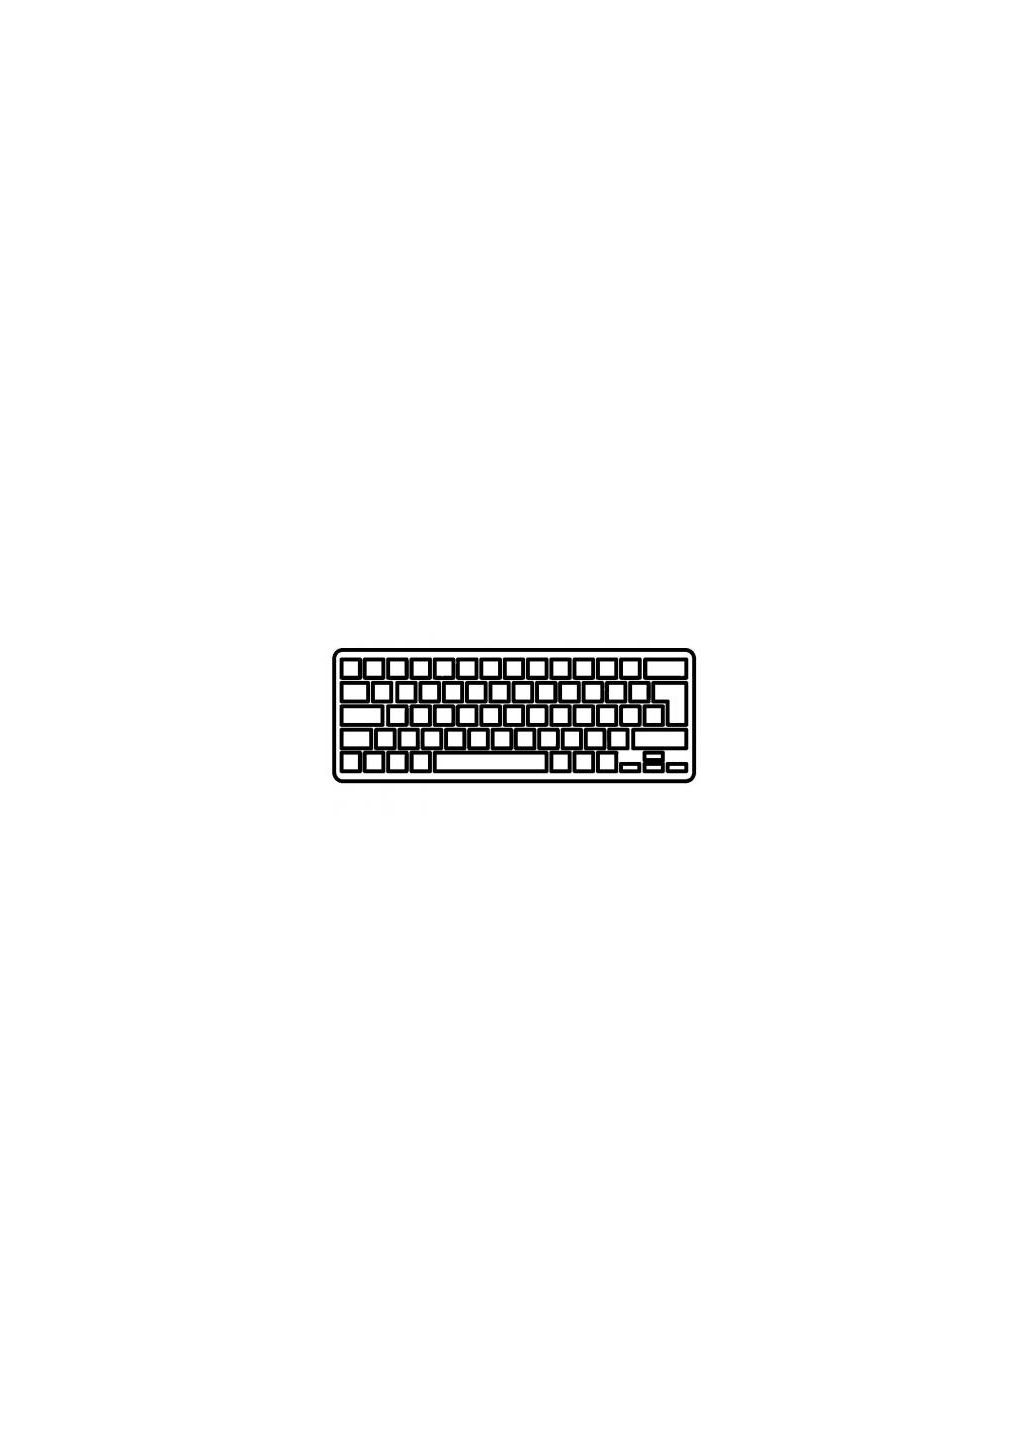 Клавиатура ноутбука (A43492) Asus a8/a8j/w3/w3j/w3000/f8/n80 белая ru (276707880)